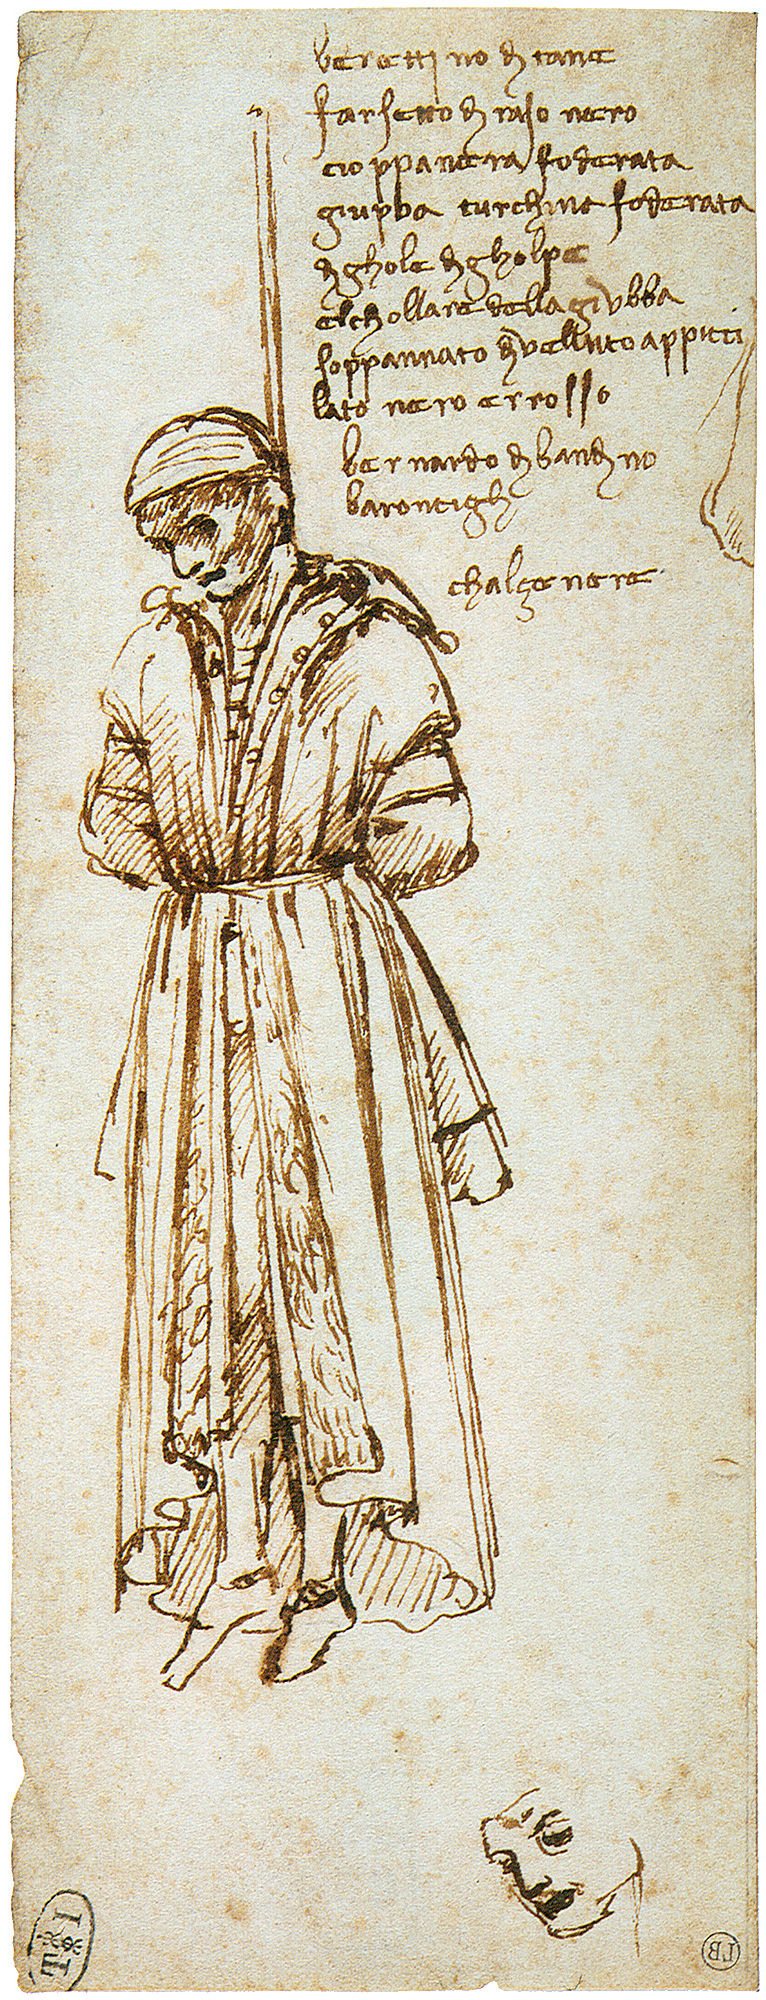 Leonardo Da Vinci, Disegno del cadavere di Bernardo di Bandino Baroncelli, 1479